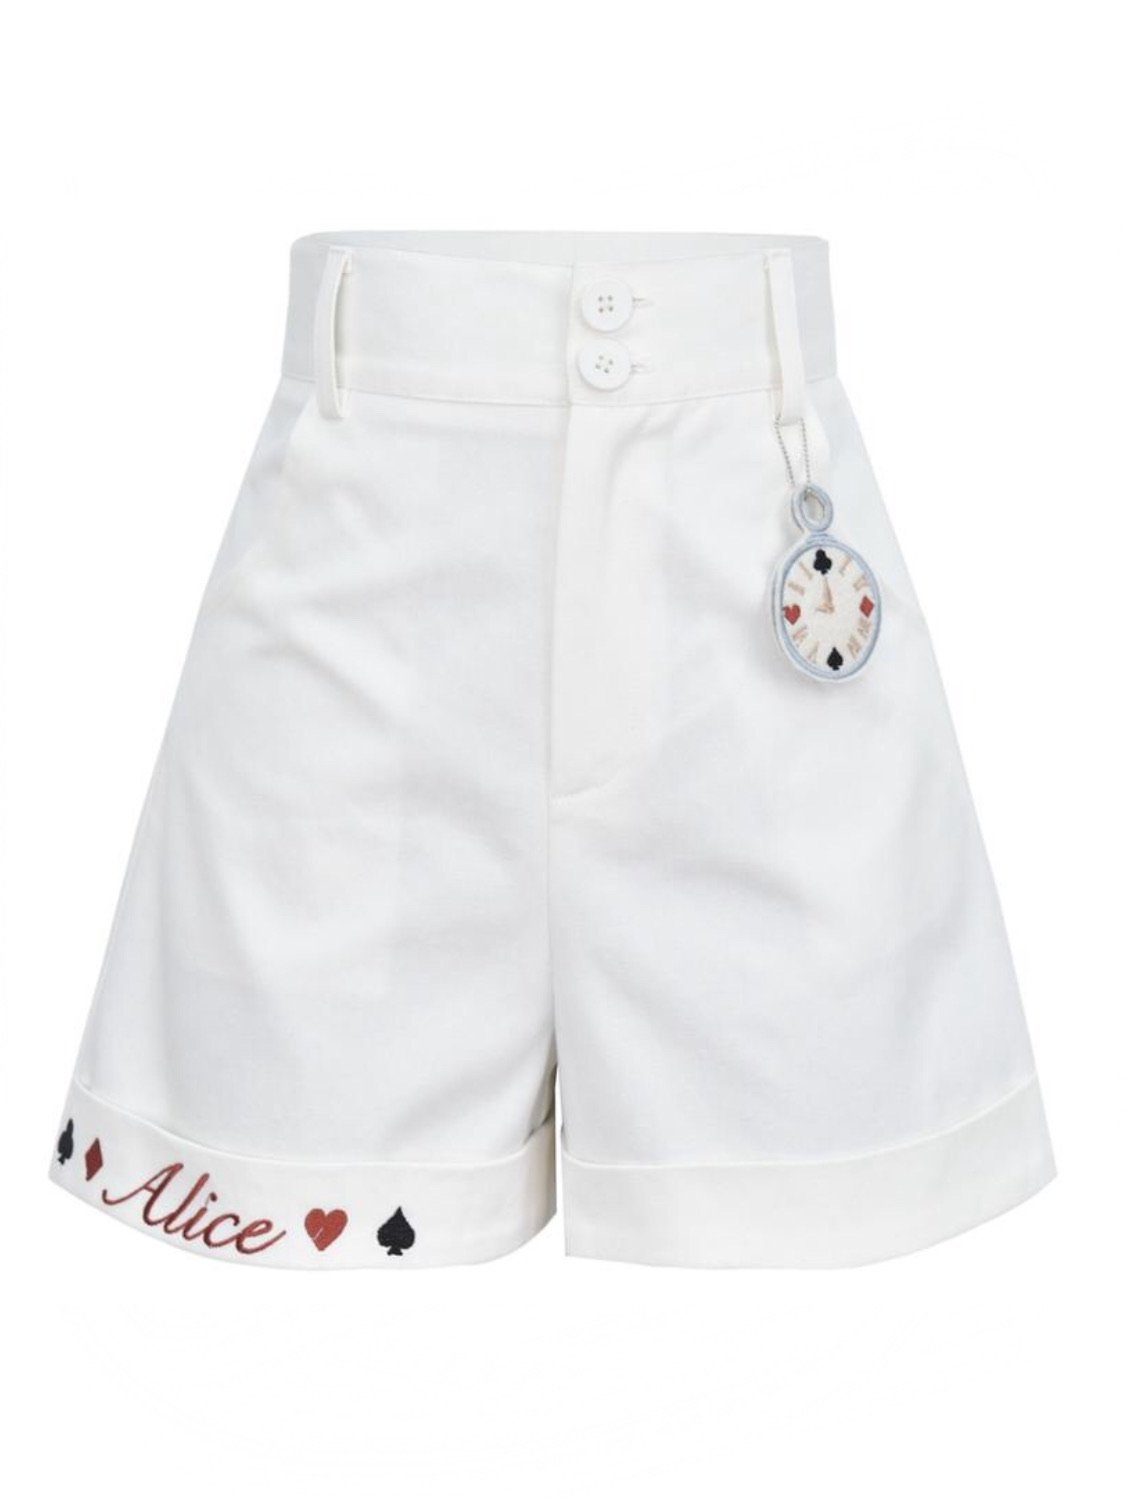 White Rabbit Blouse & Shorts-ntbhshop